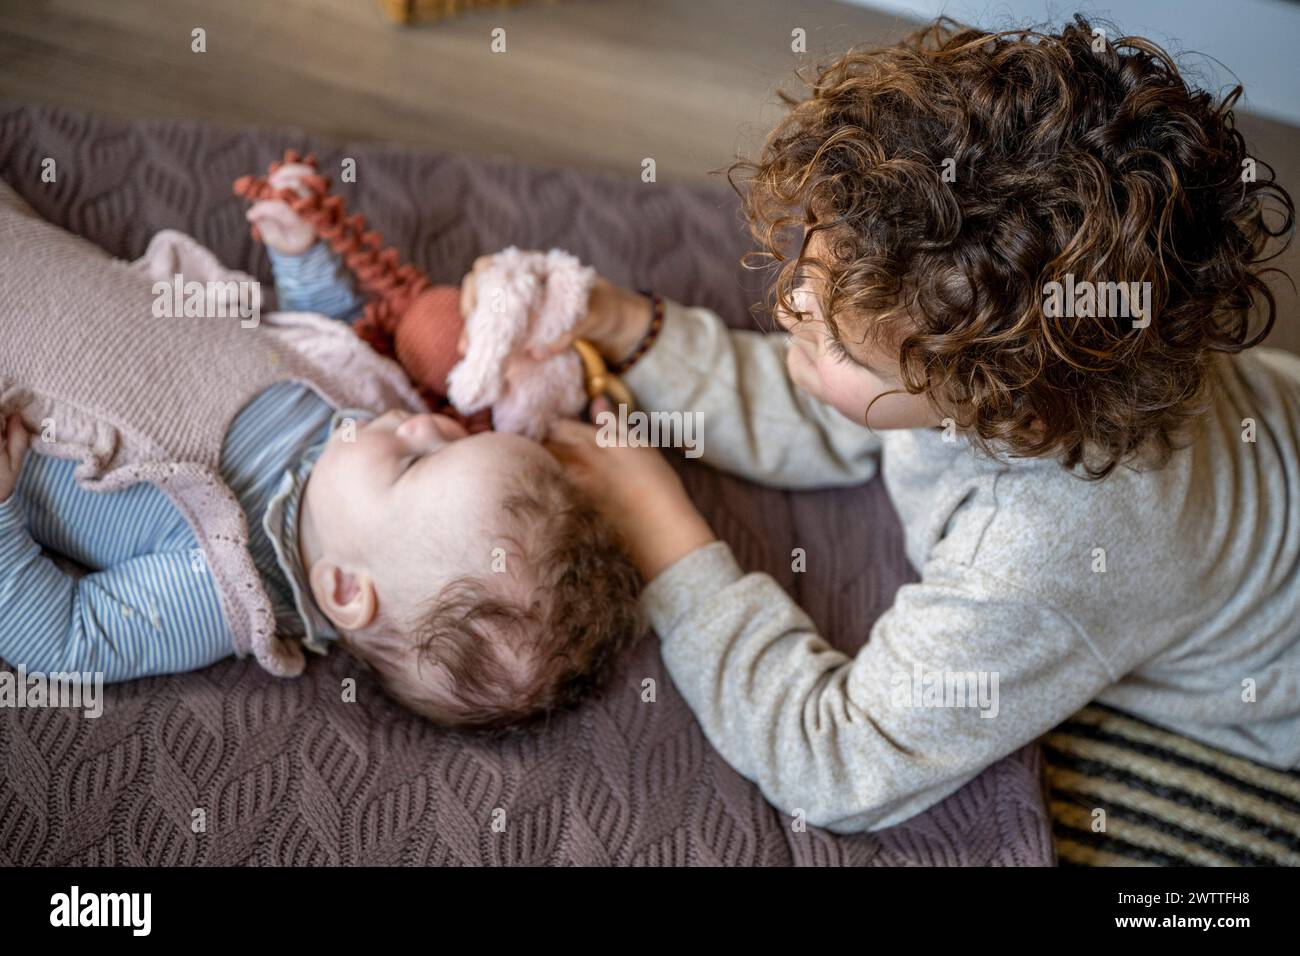 Un frère ou une sœur plus âgé interagit tendrement avec un bébé reposant sur une couverture confortable. Banque D'Images